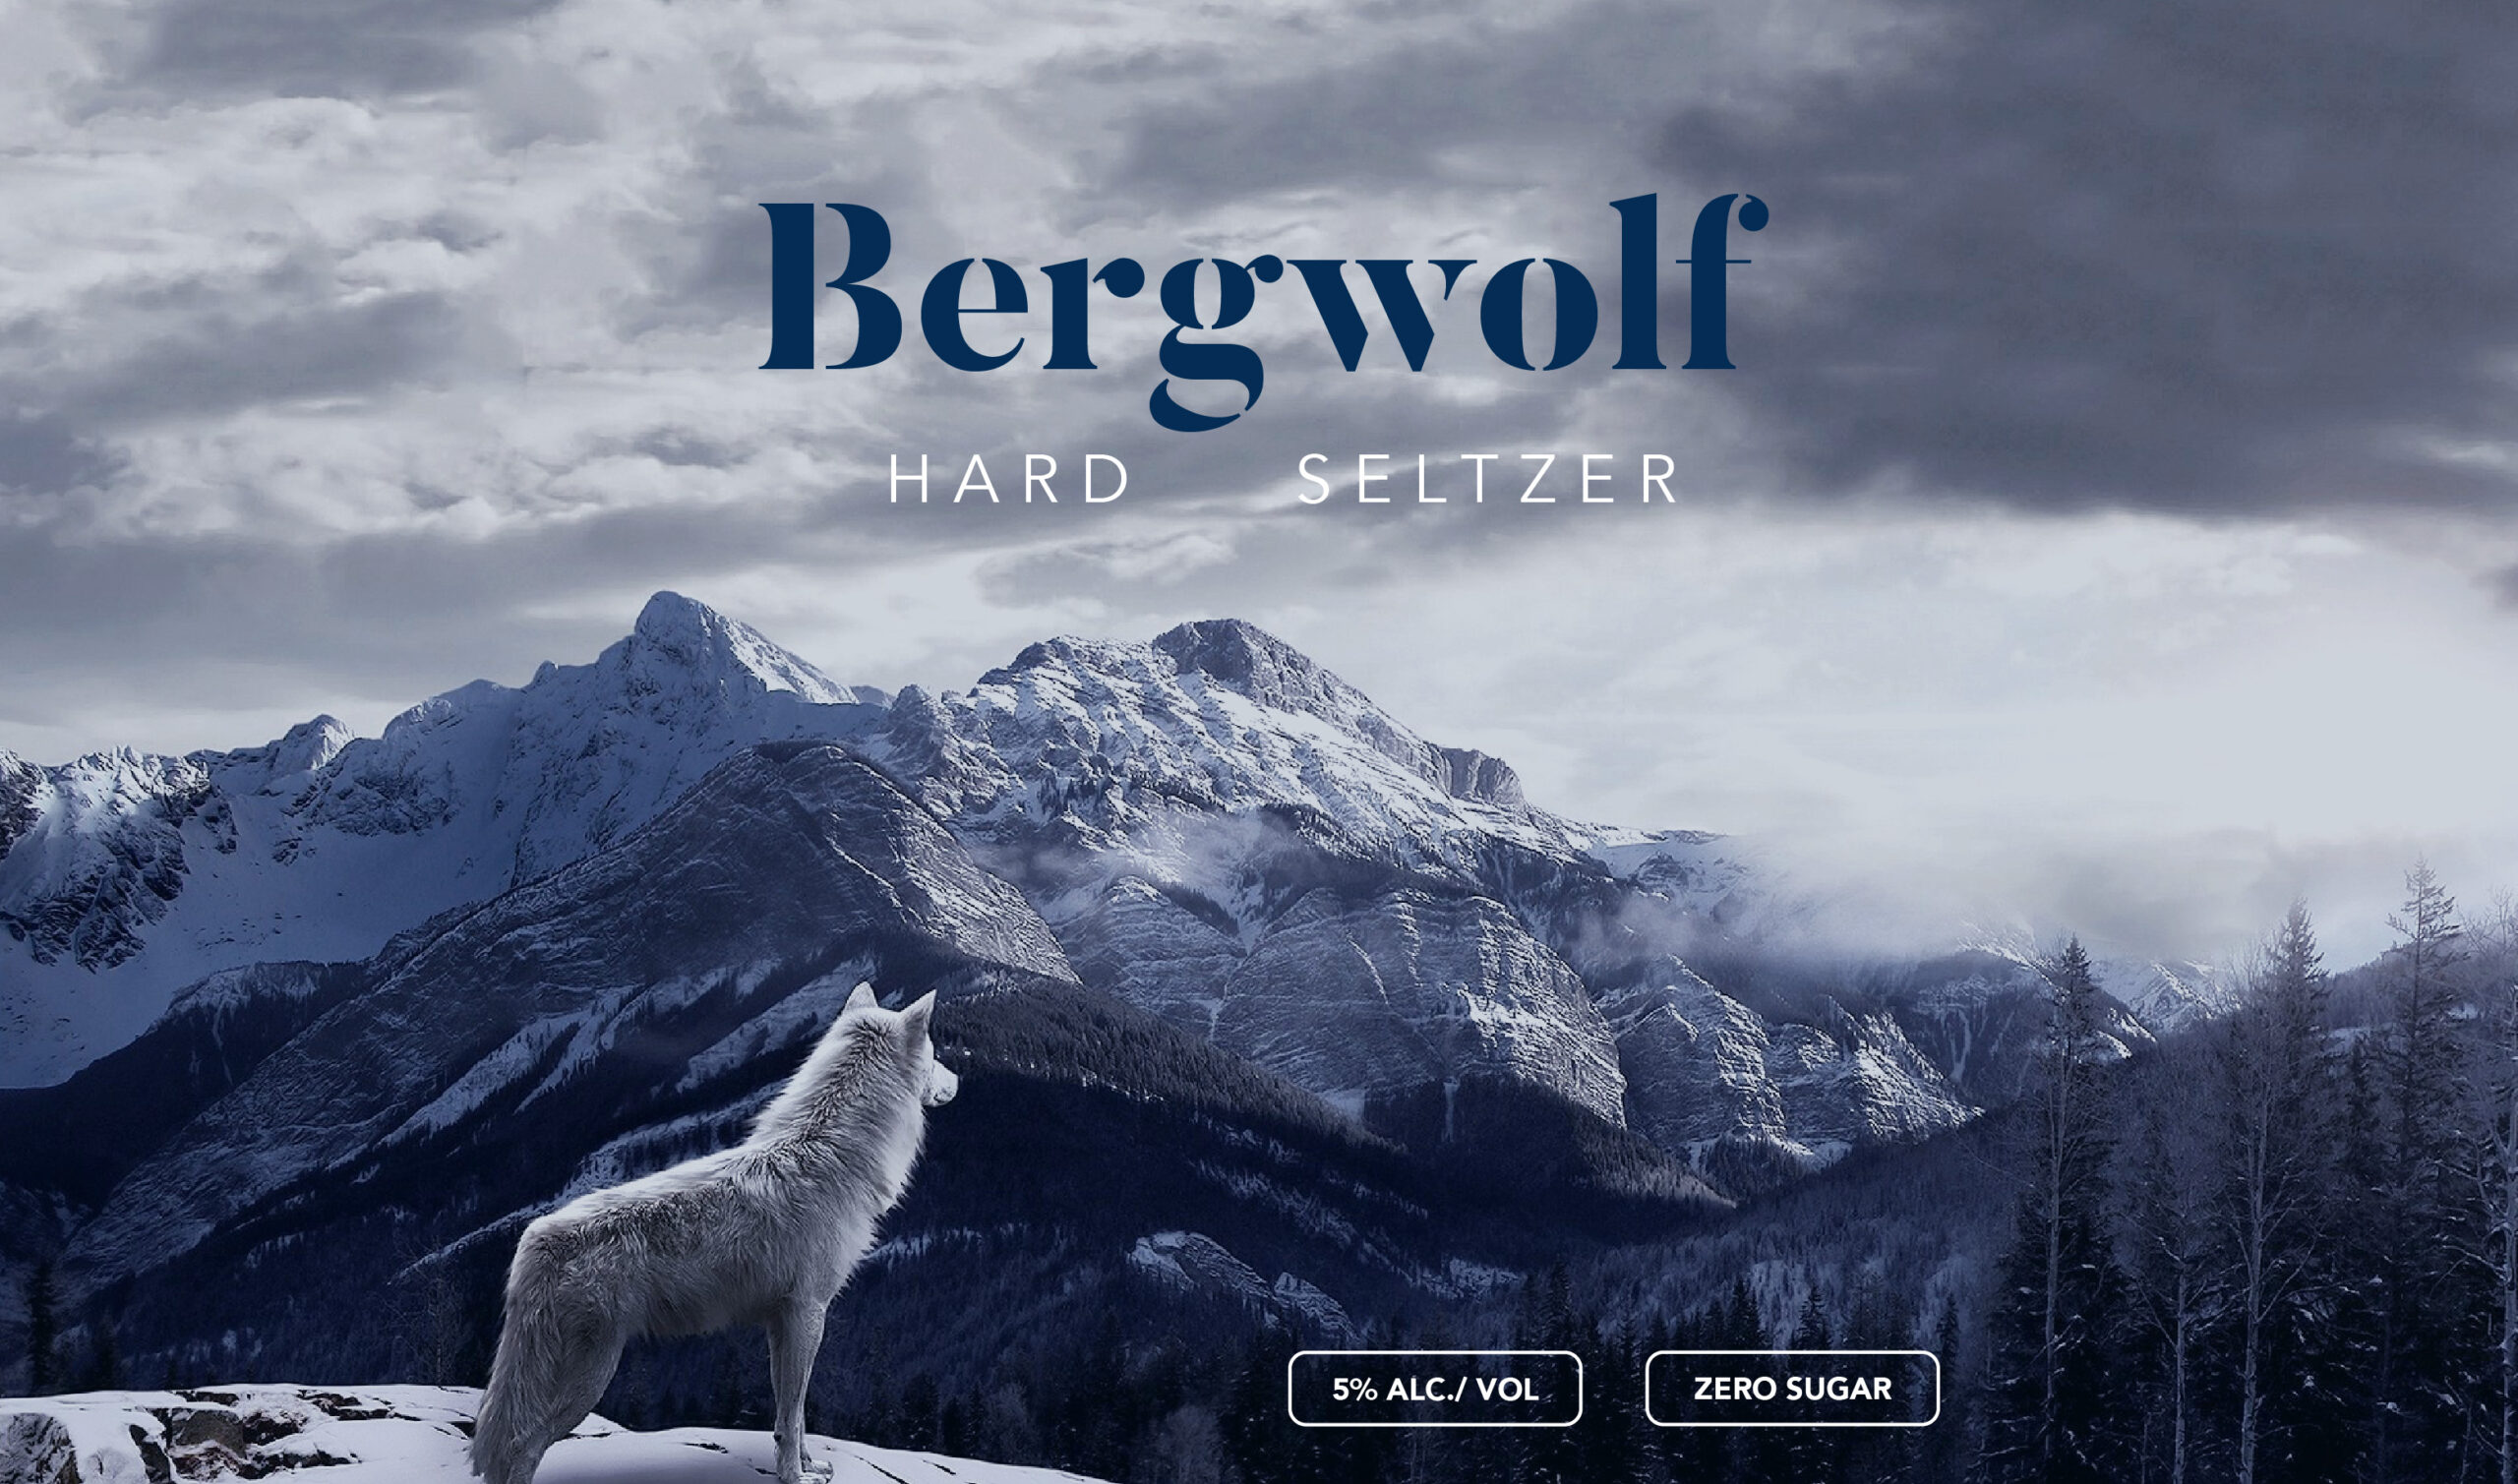 Bergwolf-HardSeltzer-01